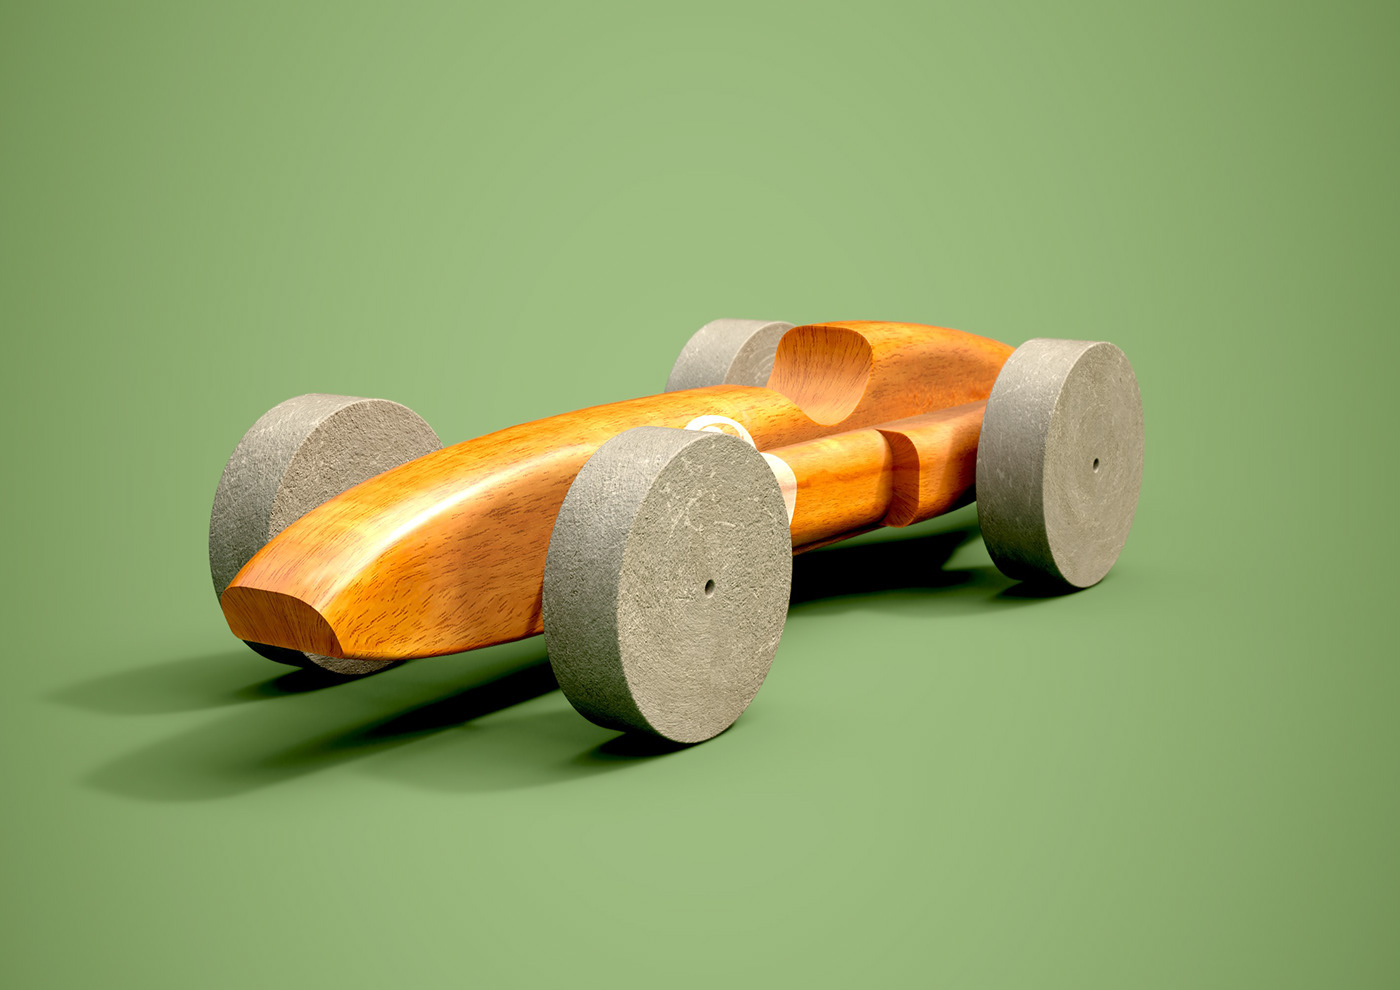 Alan Mattano car FERRARI toy wooden